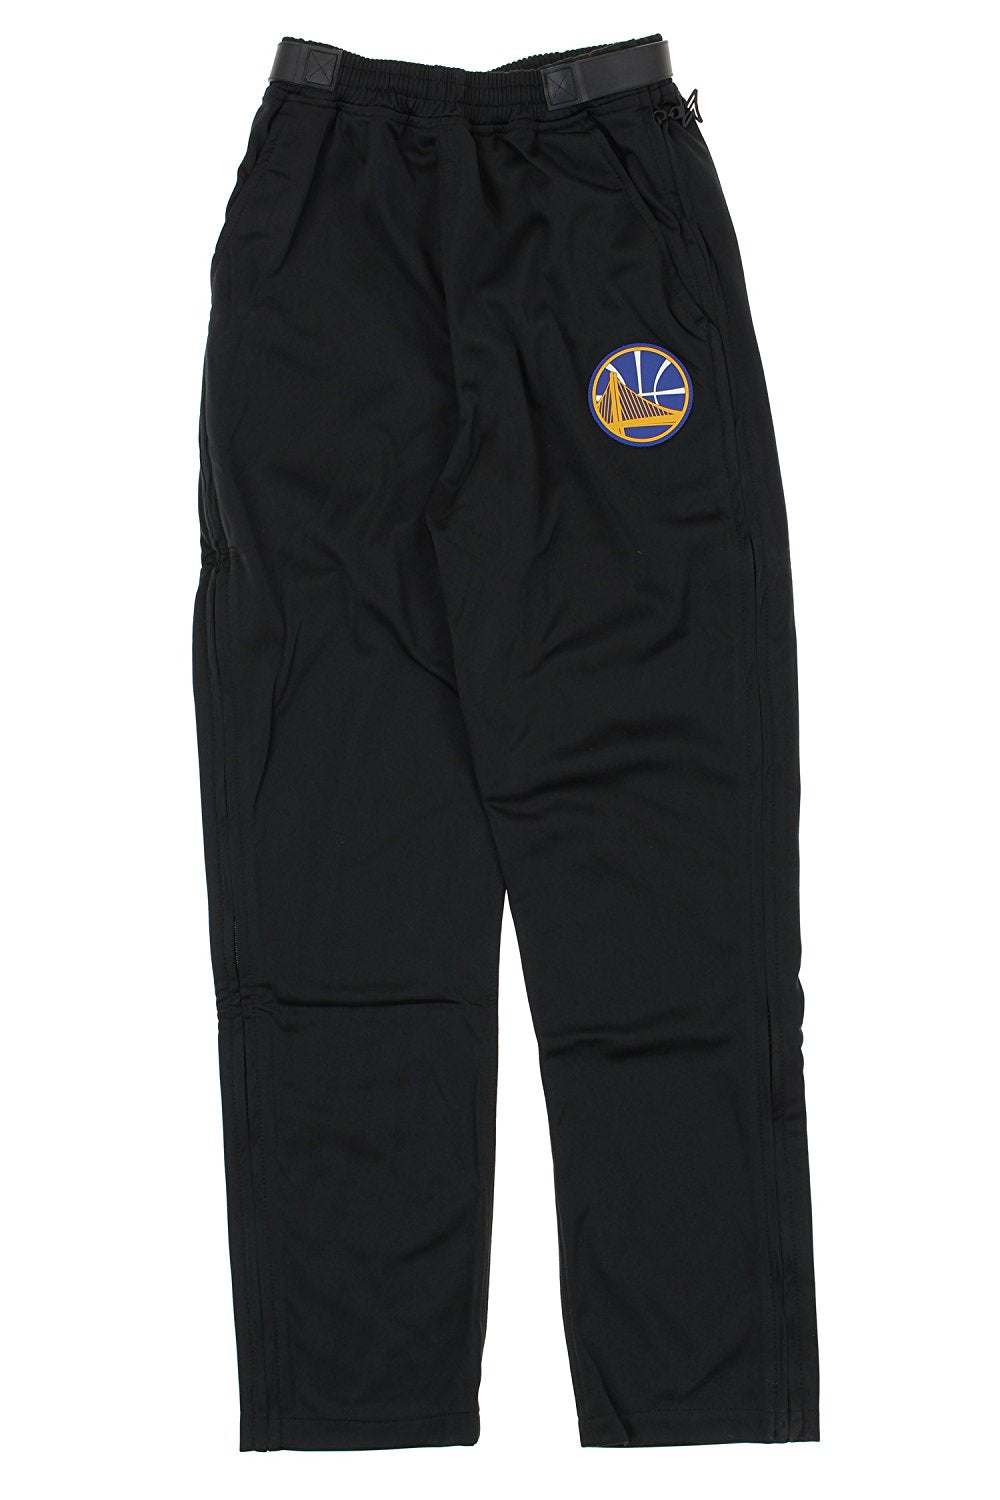 Zipway NBA Men's Golden State Warriors Tricot Tear-away Pants